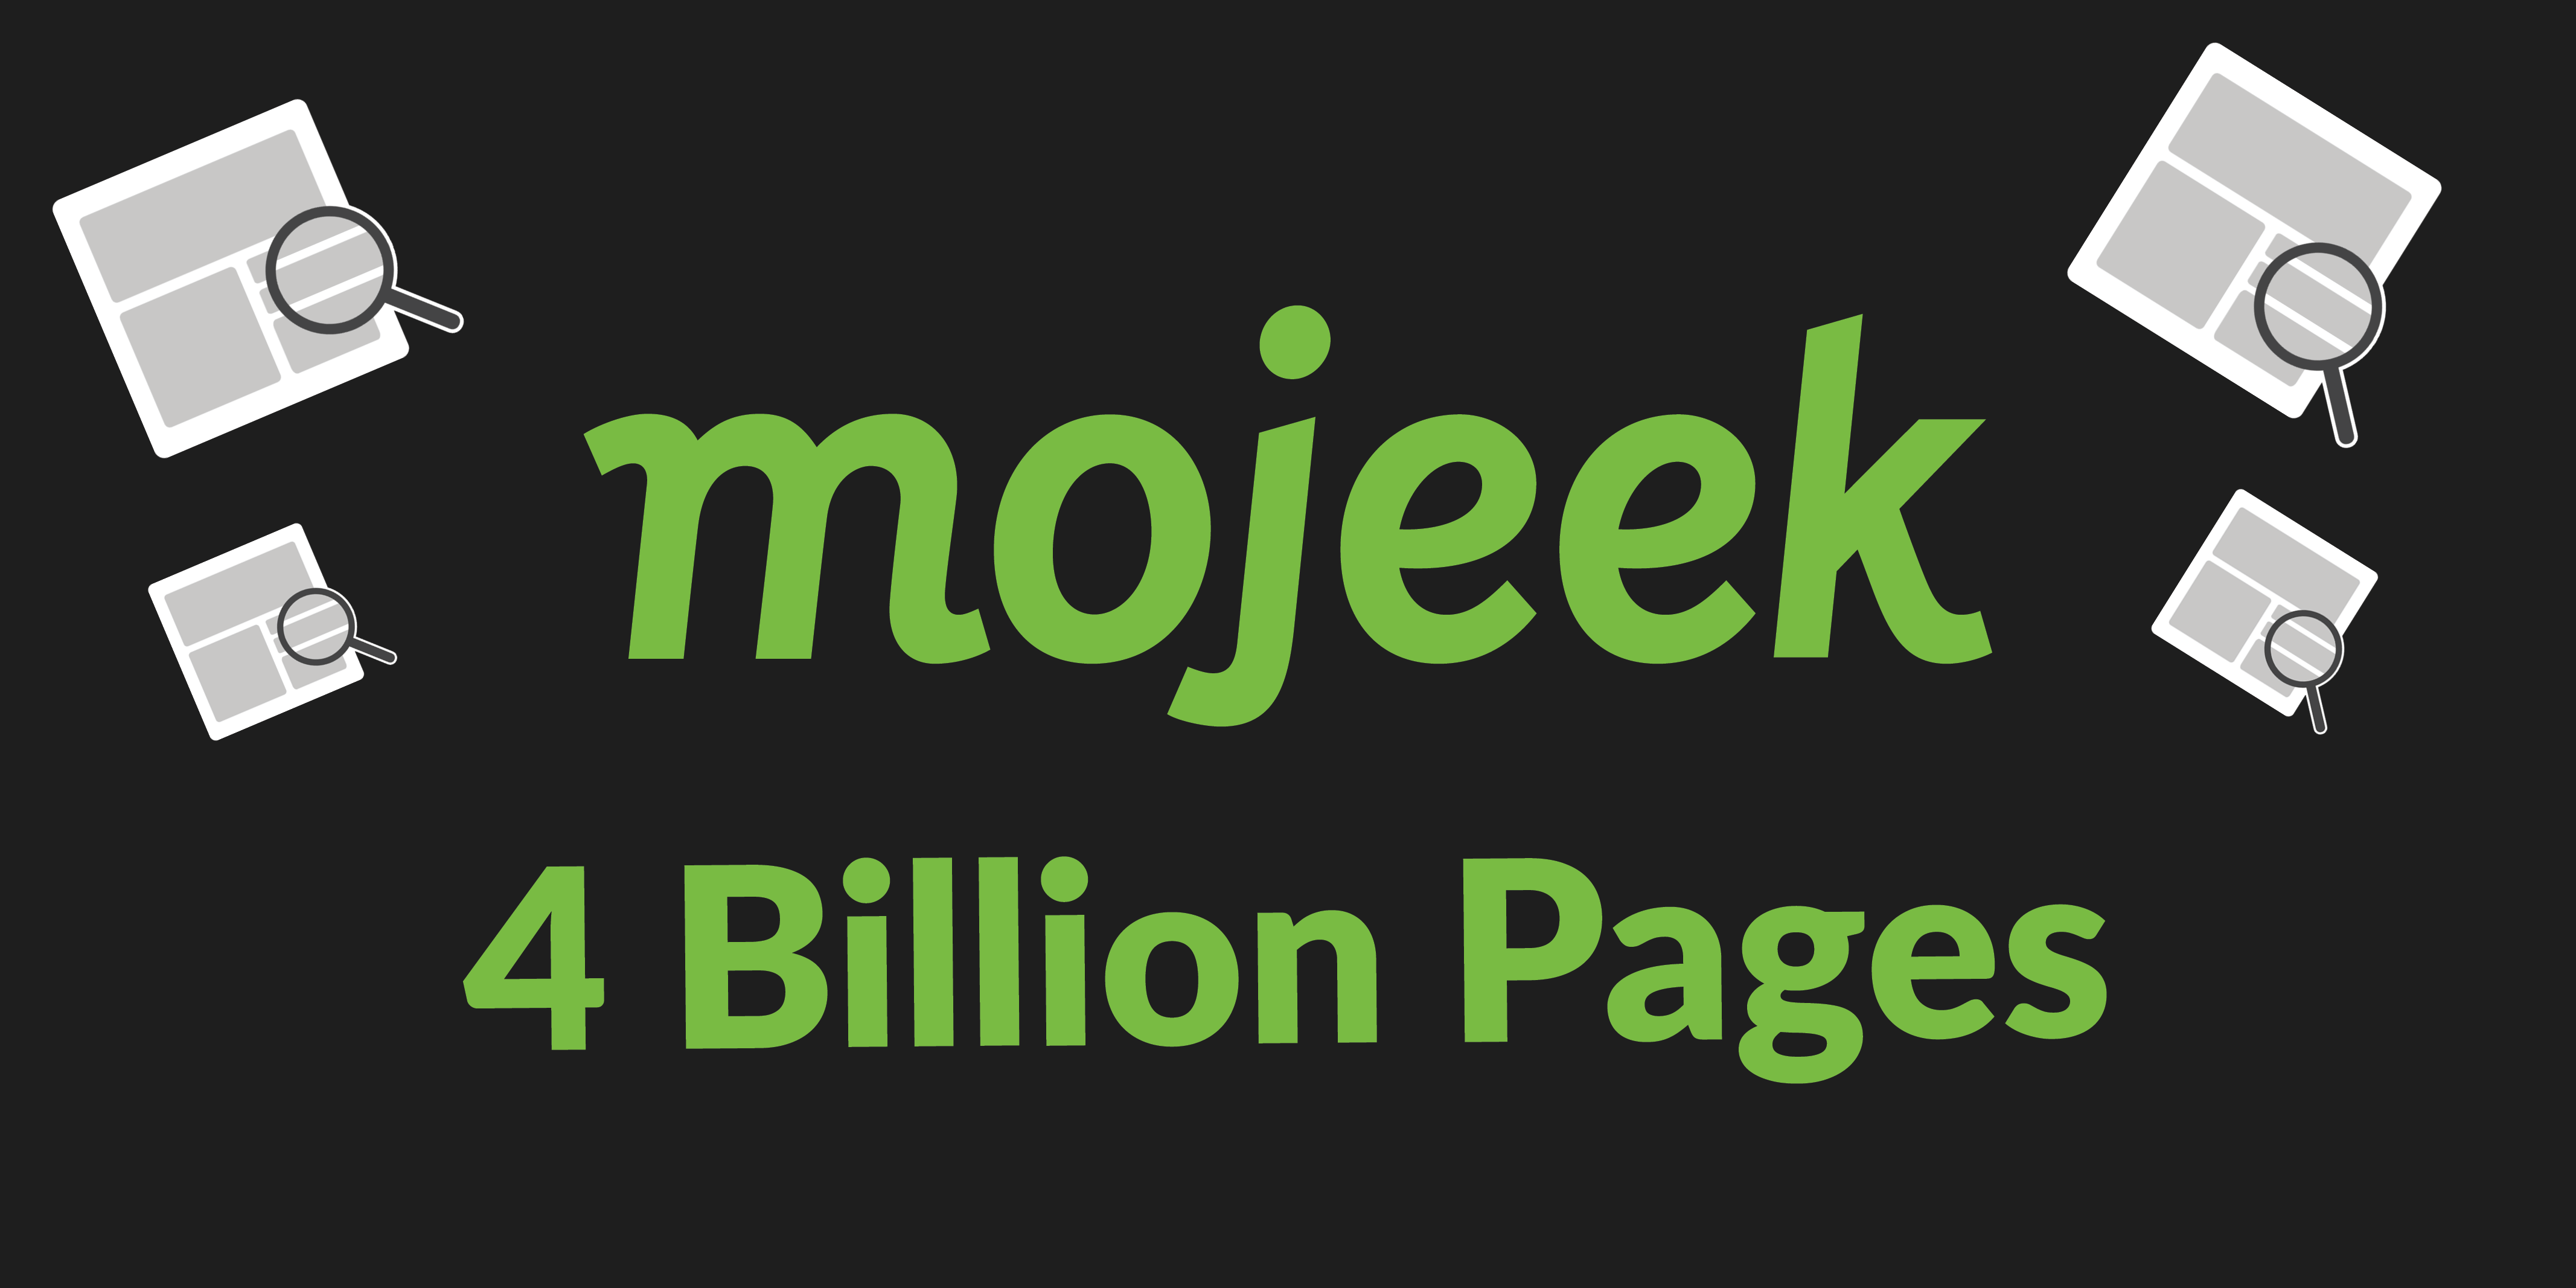 4 billion pages